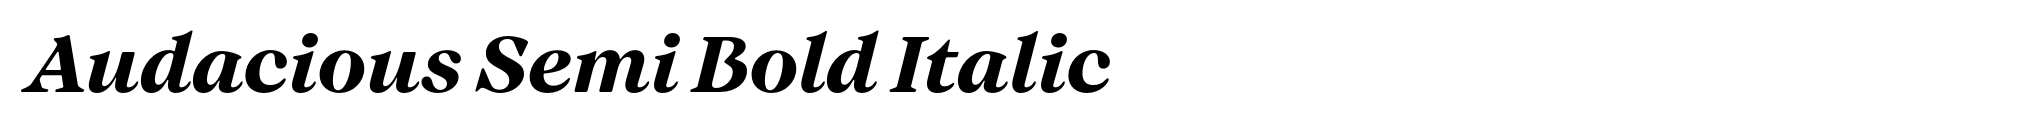 Audacious Semi Bold Italic image